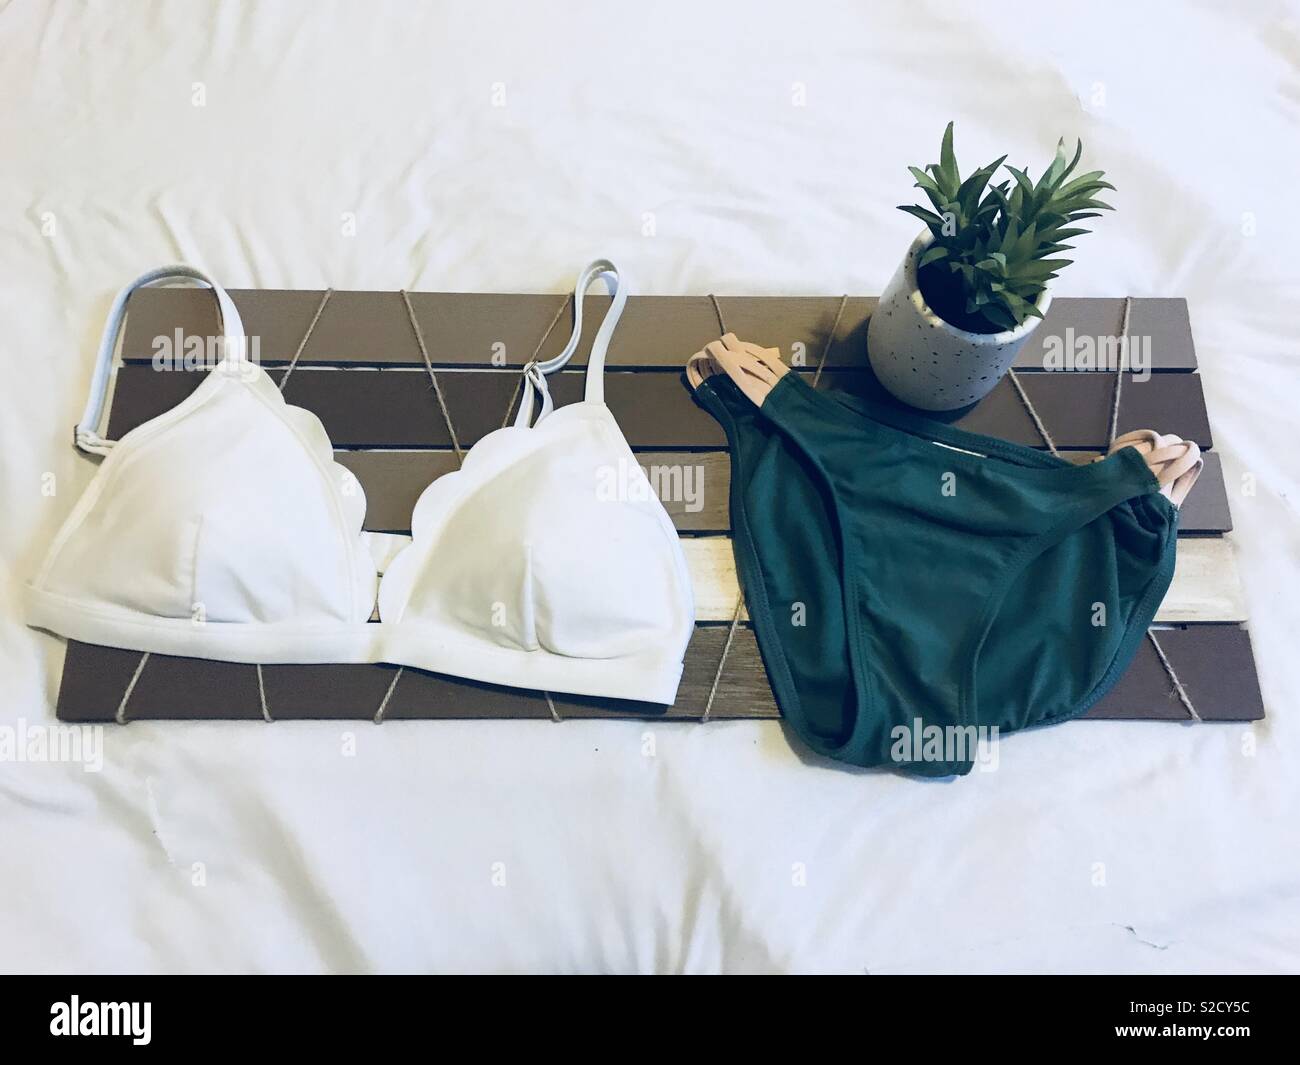 Minimalistische, Strand Kleidung und Lifestyle. Schönen, grünen und weißen Badeanzug, bikini angezeigt auf einem Holzbrett mit einem grünen Topfpflanzen saftig. Stockfoto